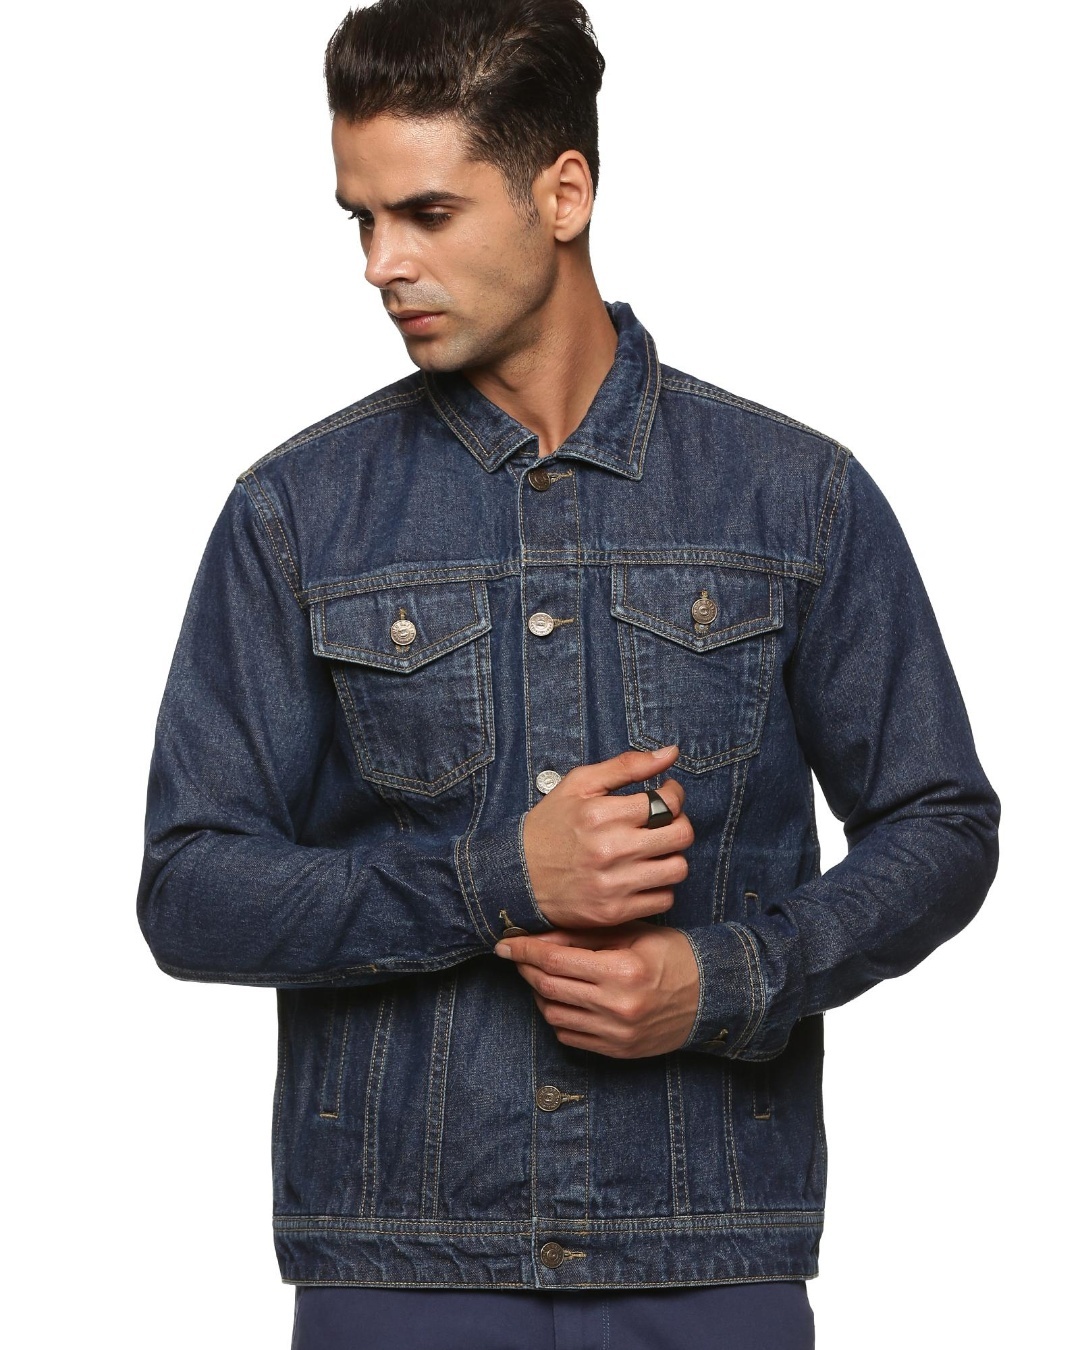 Buy Men's Blue Denim Jacket Online at Bewakoof